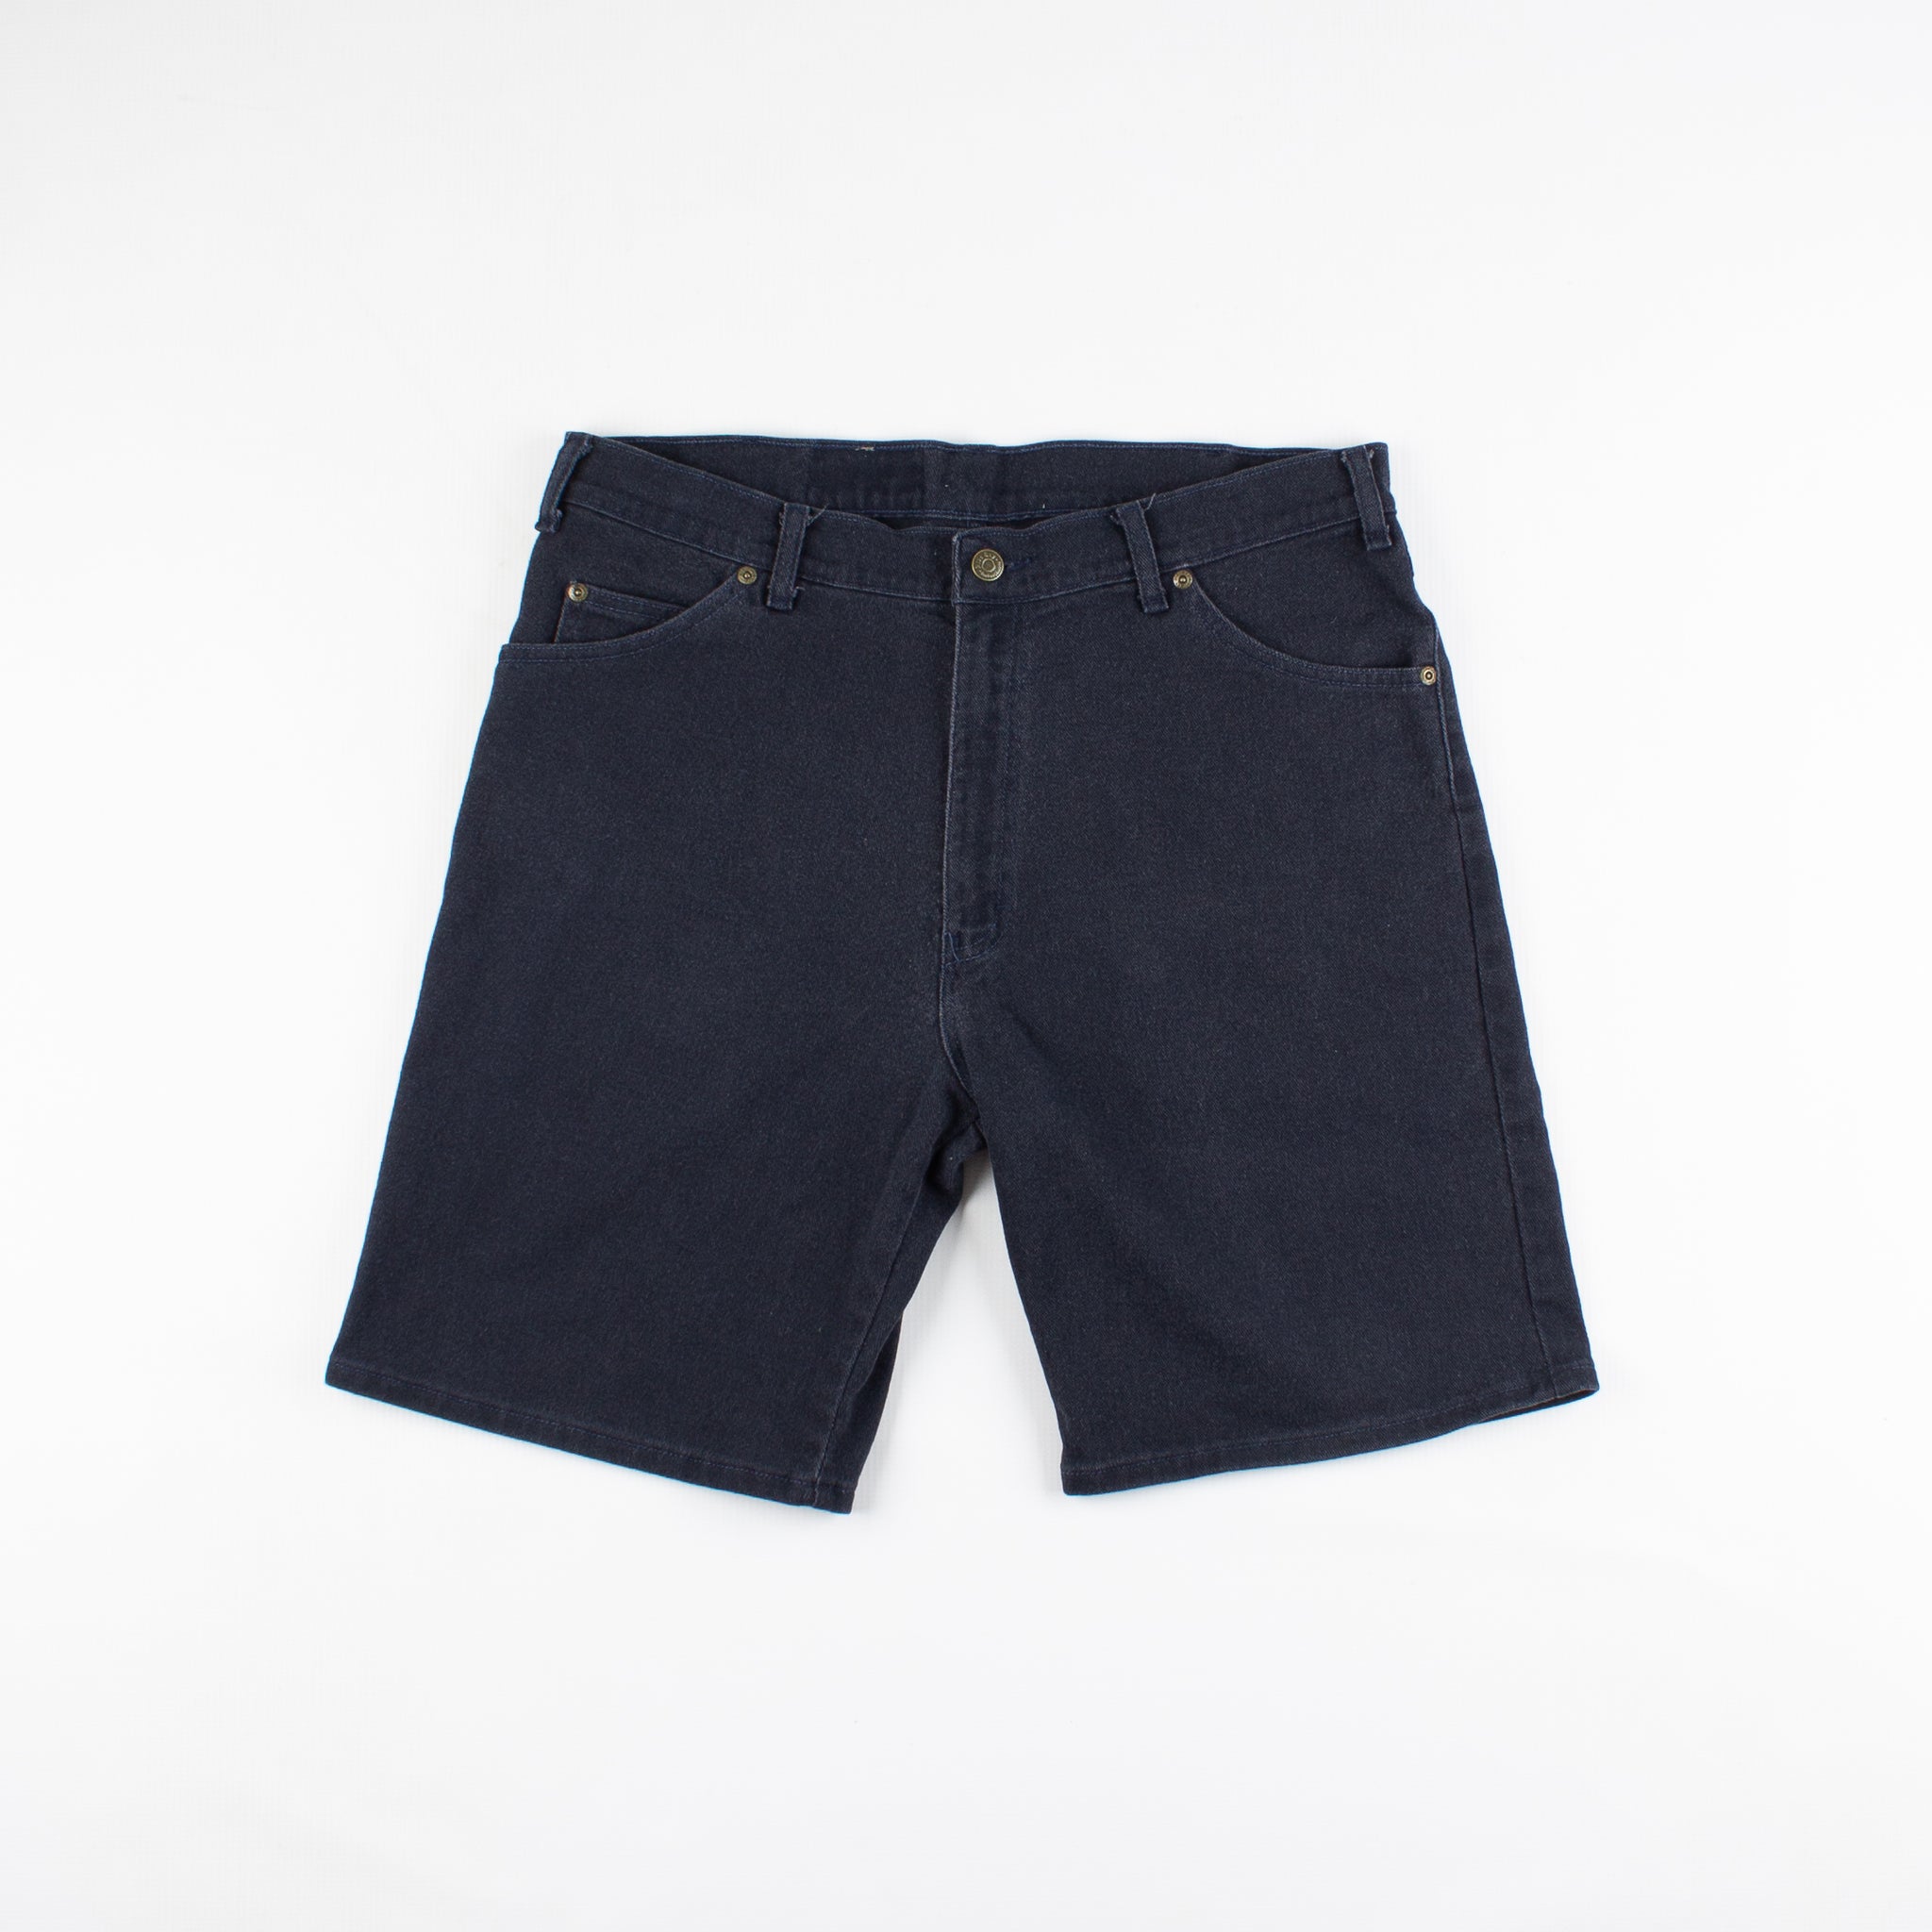 Shorts Blue Bay 34 Vintage